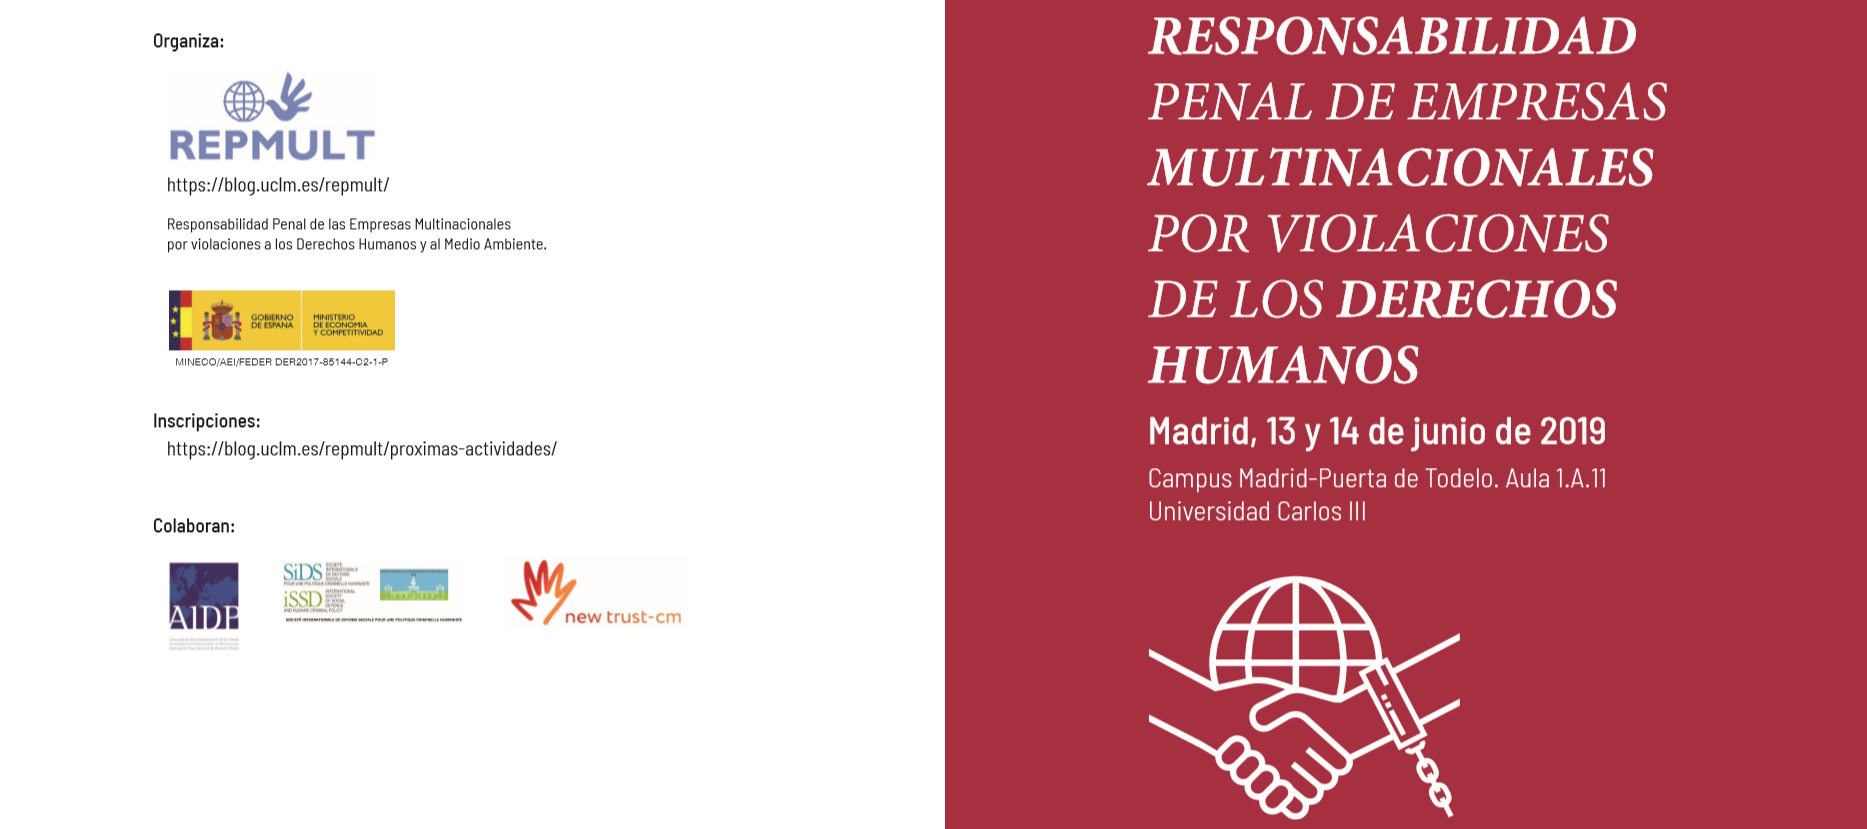 Congreso Internacional sobre Responsabilidad Penal de Empresas Multinacionales por Violaciones de Derechos Humanos